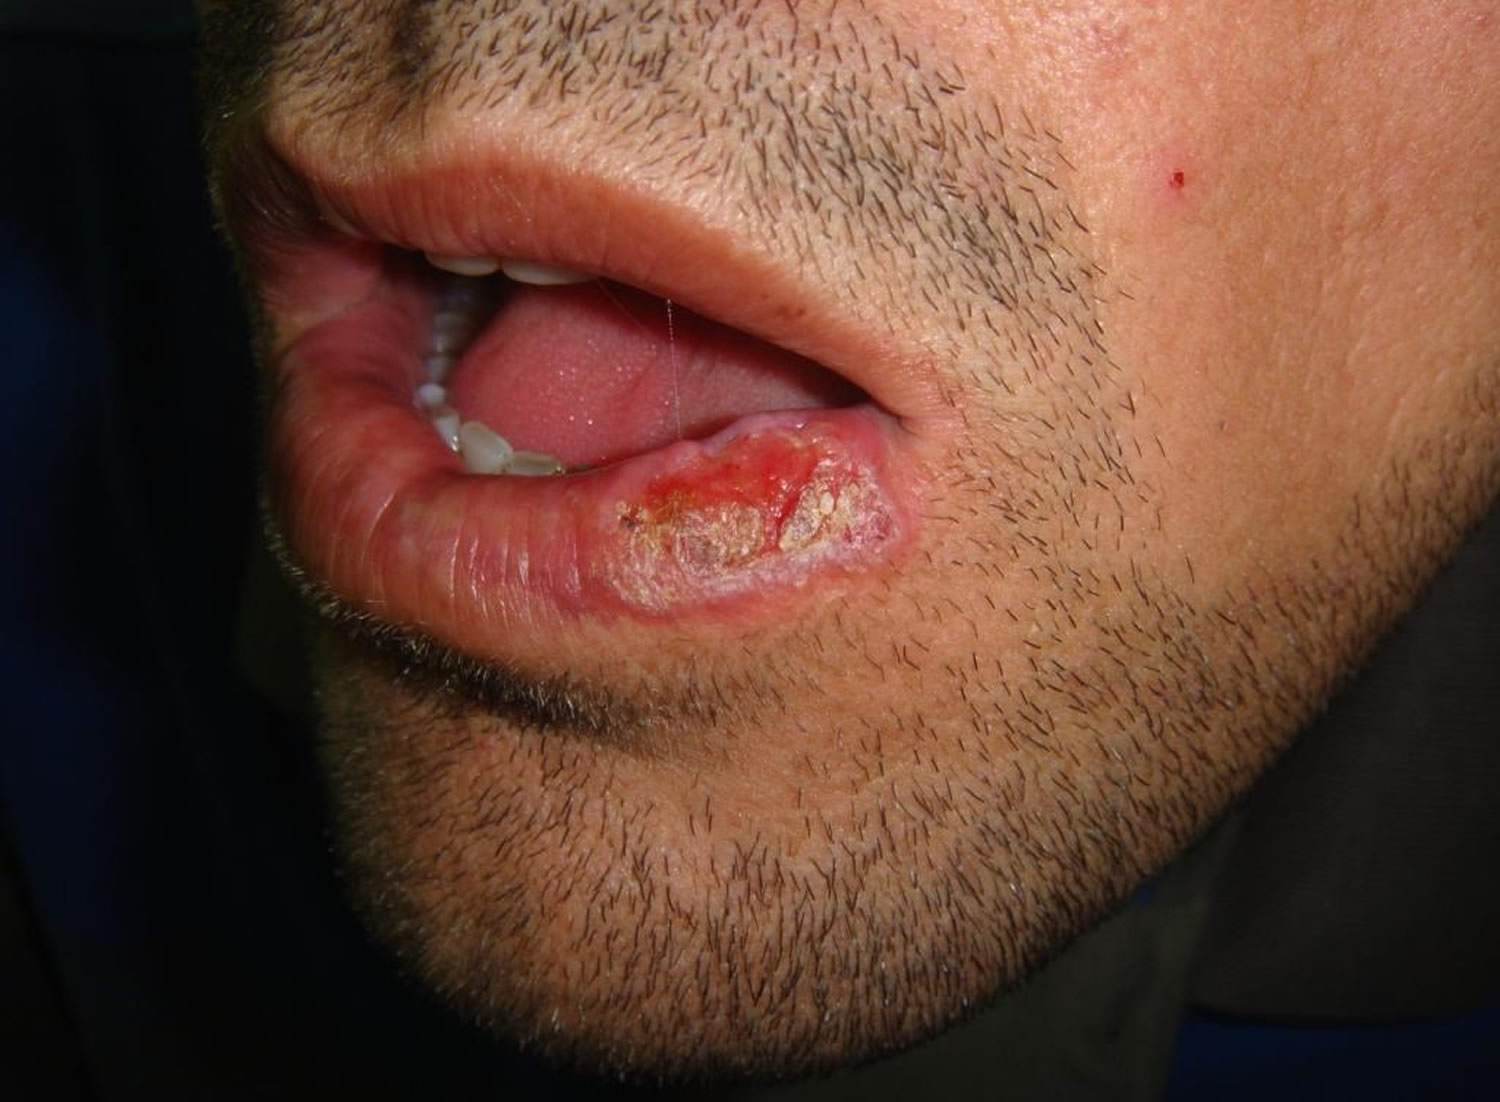 Erosive oral lichen planus